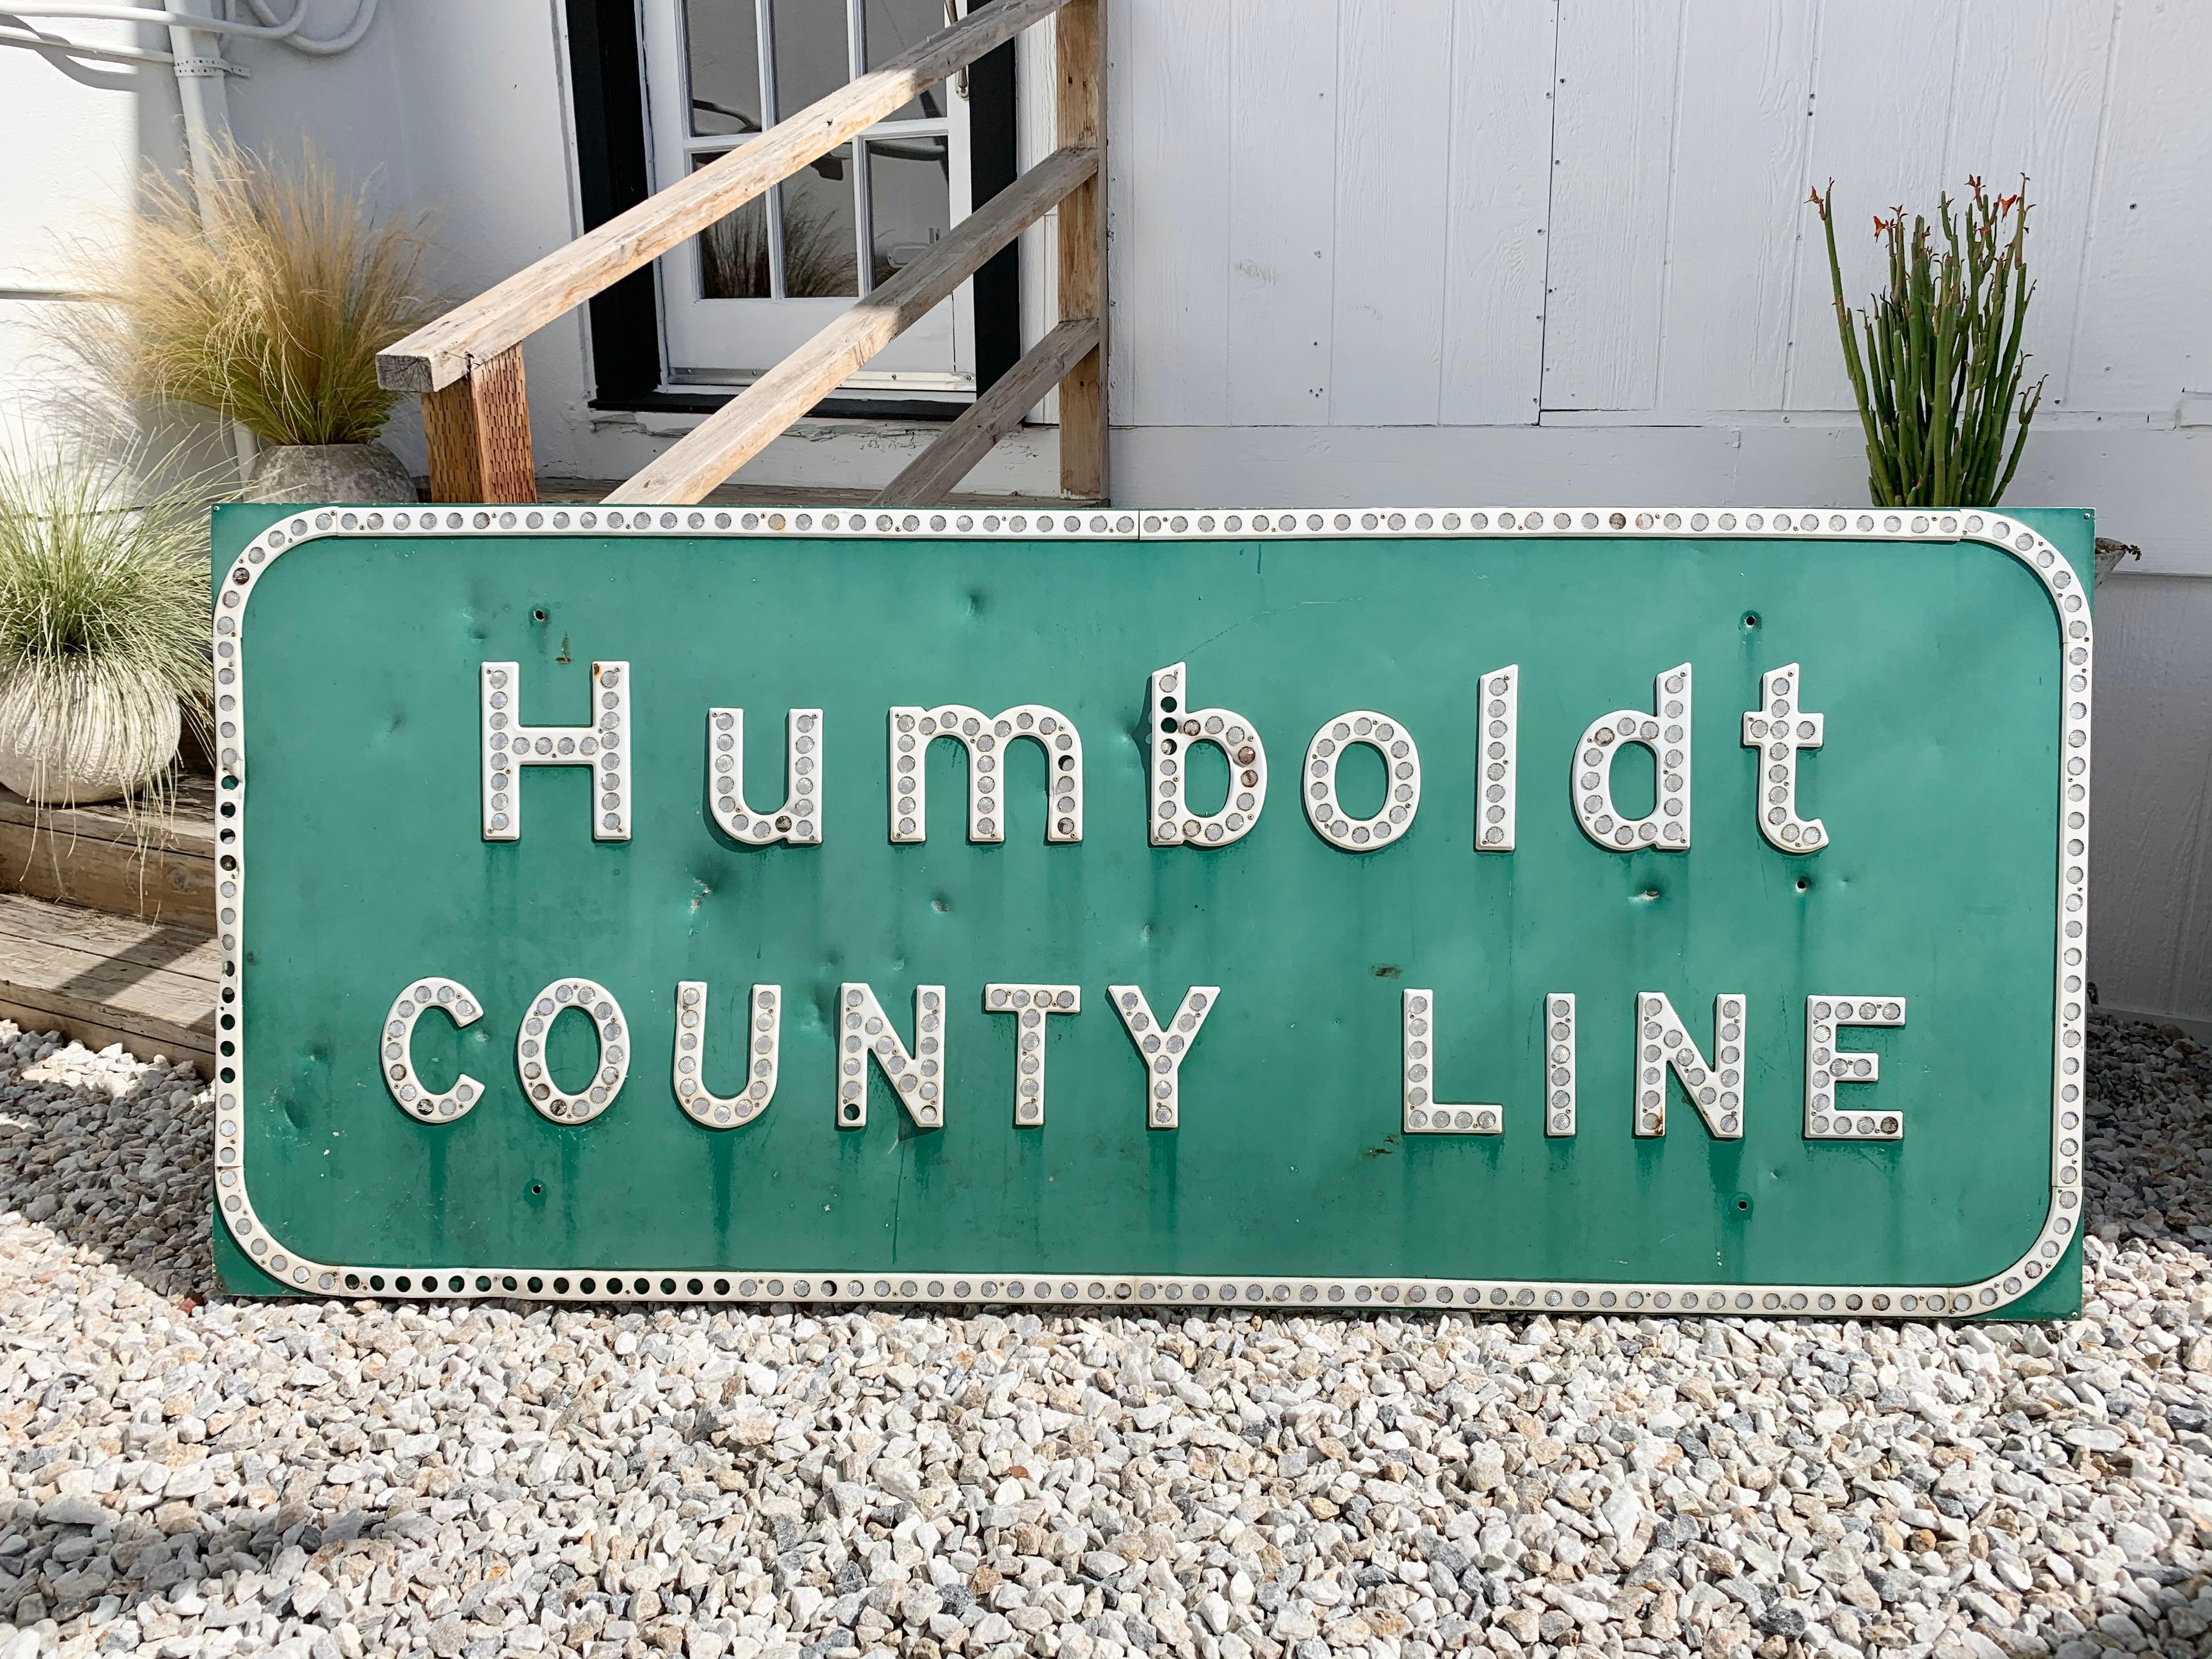 Autobahnschild an der Humboldt County Line in Nordkalifornien. Hergestellt im Jahr 1965. Ein großartiges Stück Marihuana-Geschichte und amerikanisches Transportmittel. 7 Fuß breit. Grünes Stahlschild mit weißer Beschriftung und